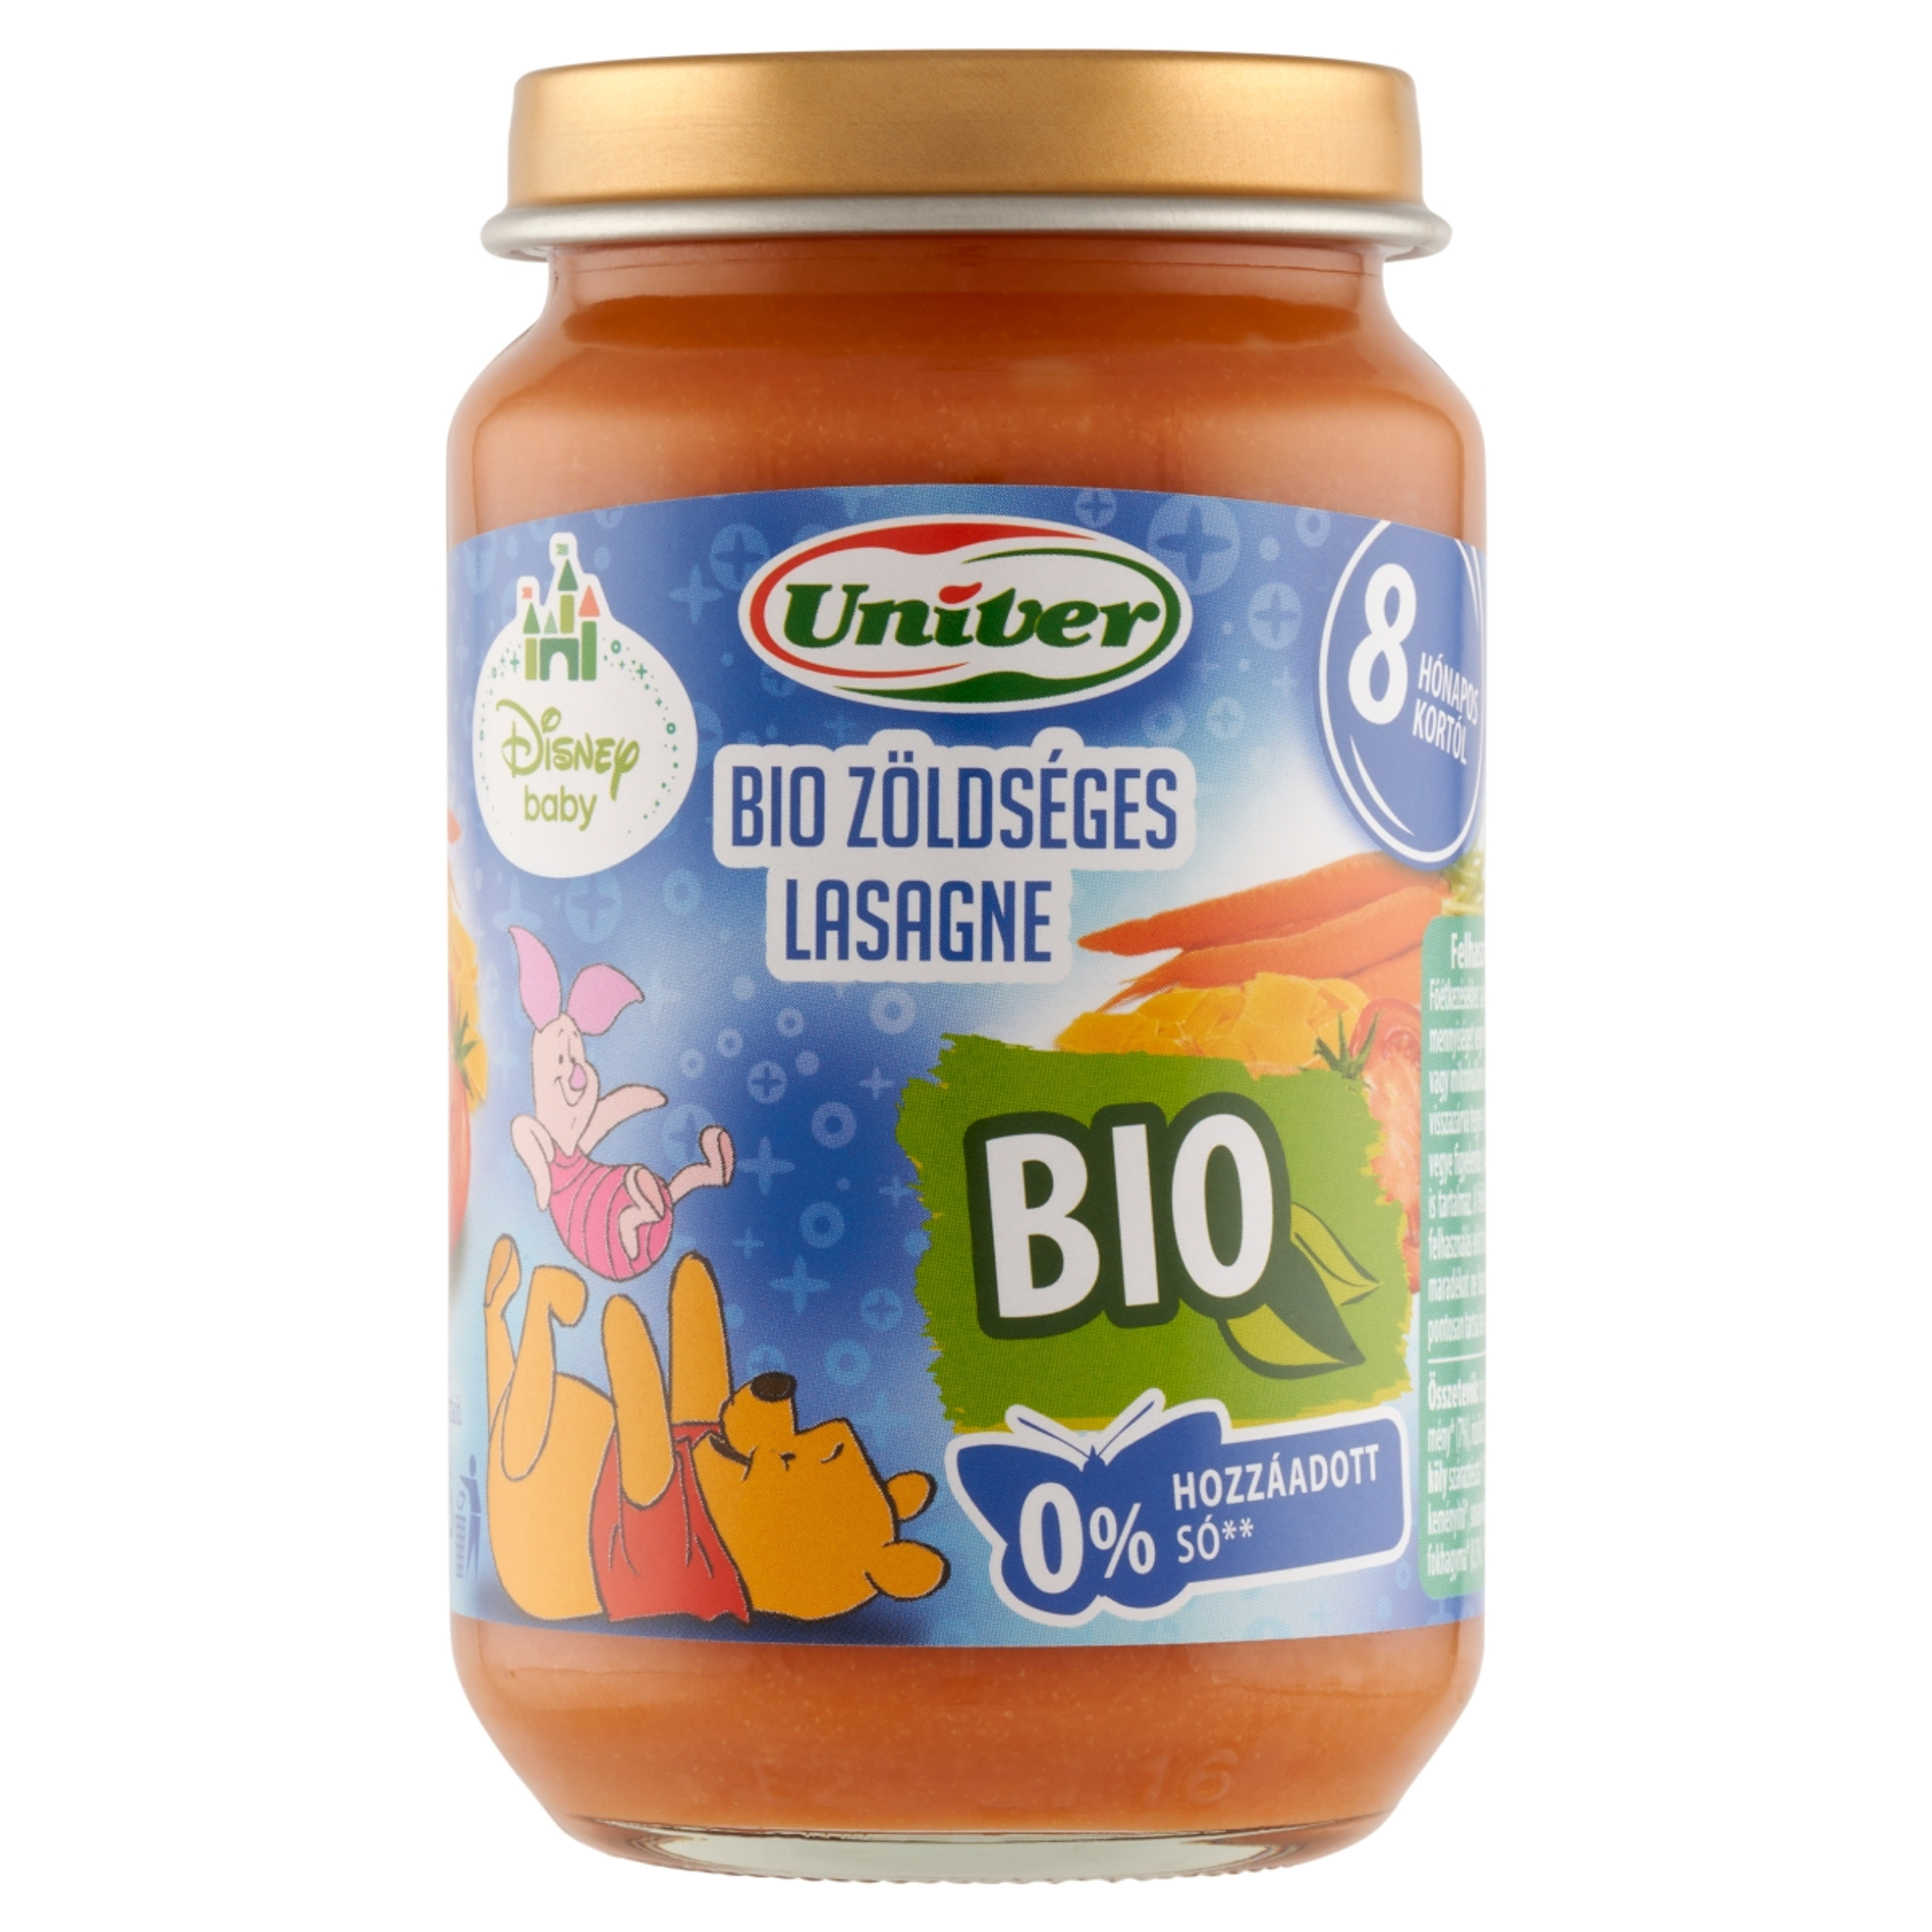 Univer Disney Baby bio zöldséges lasagne bébiétel 8 hónapos kortól - 163 g